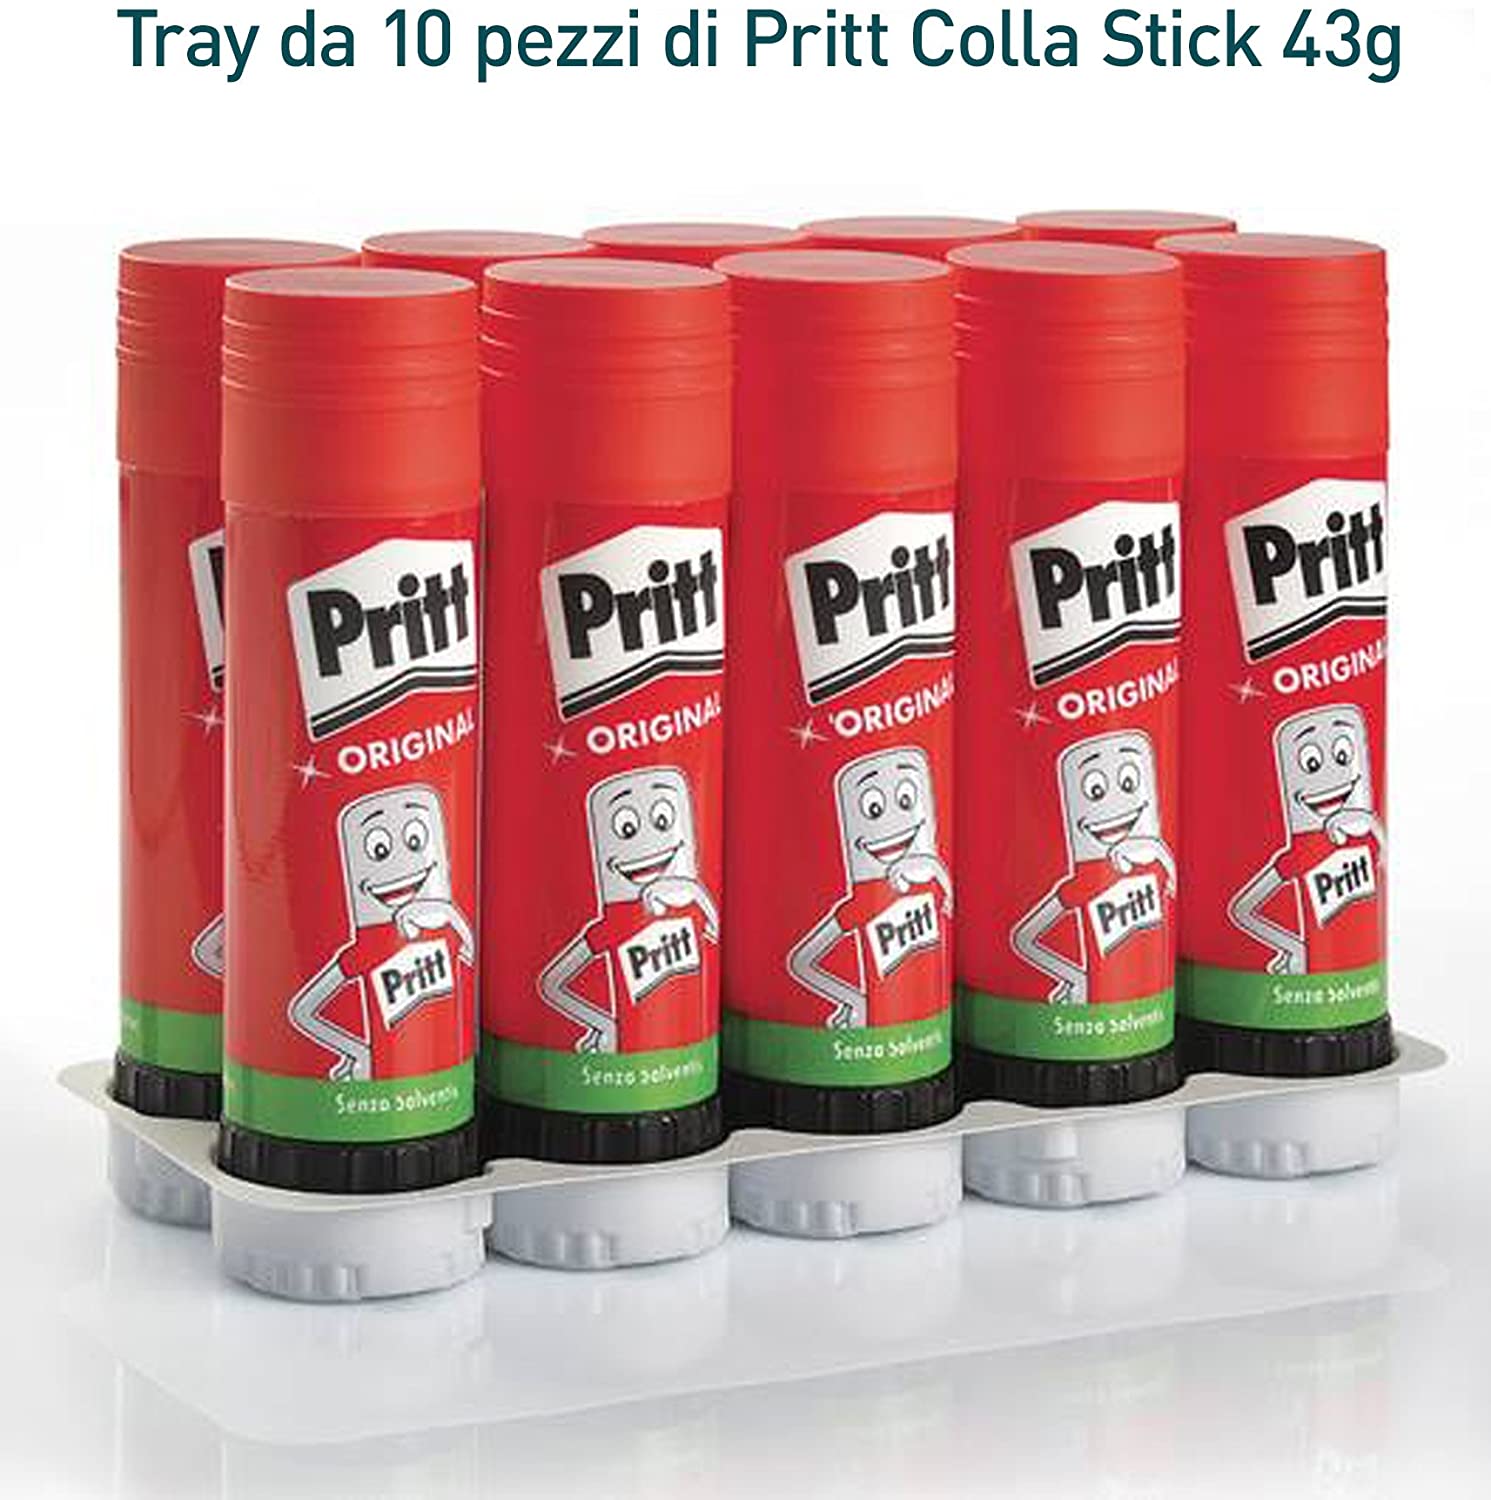 Pritt Colla Stick 43g, colla per bambini sicura e affidabile 1 pezzo -  S.G.Assistenza Store